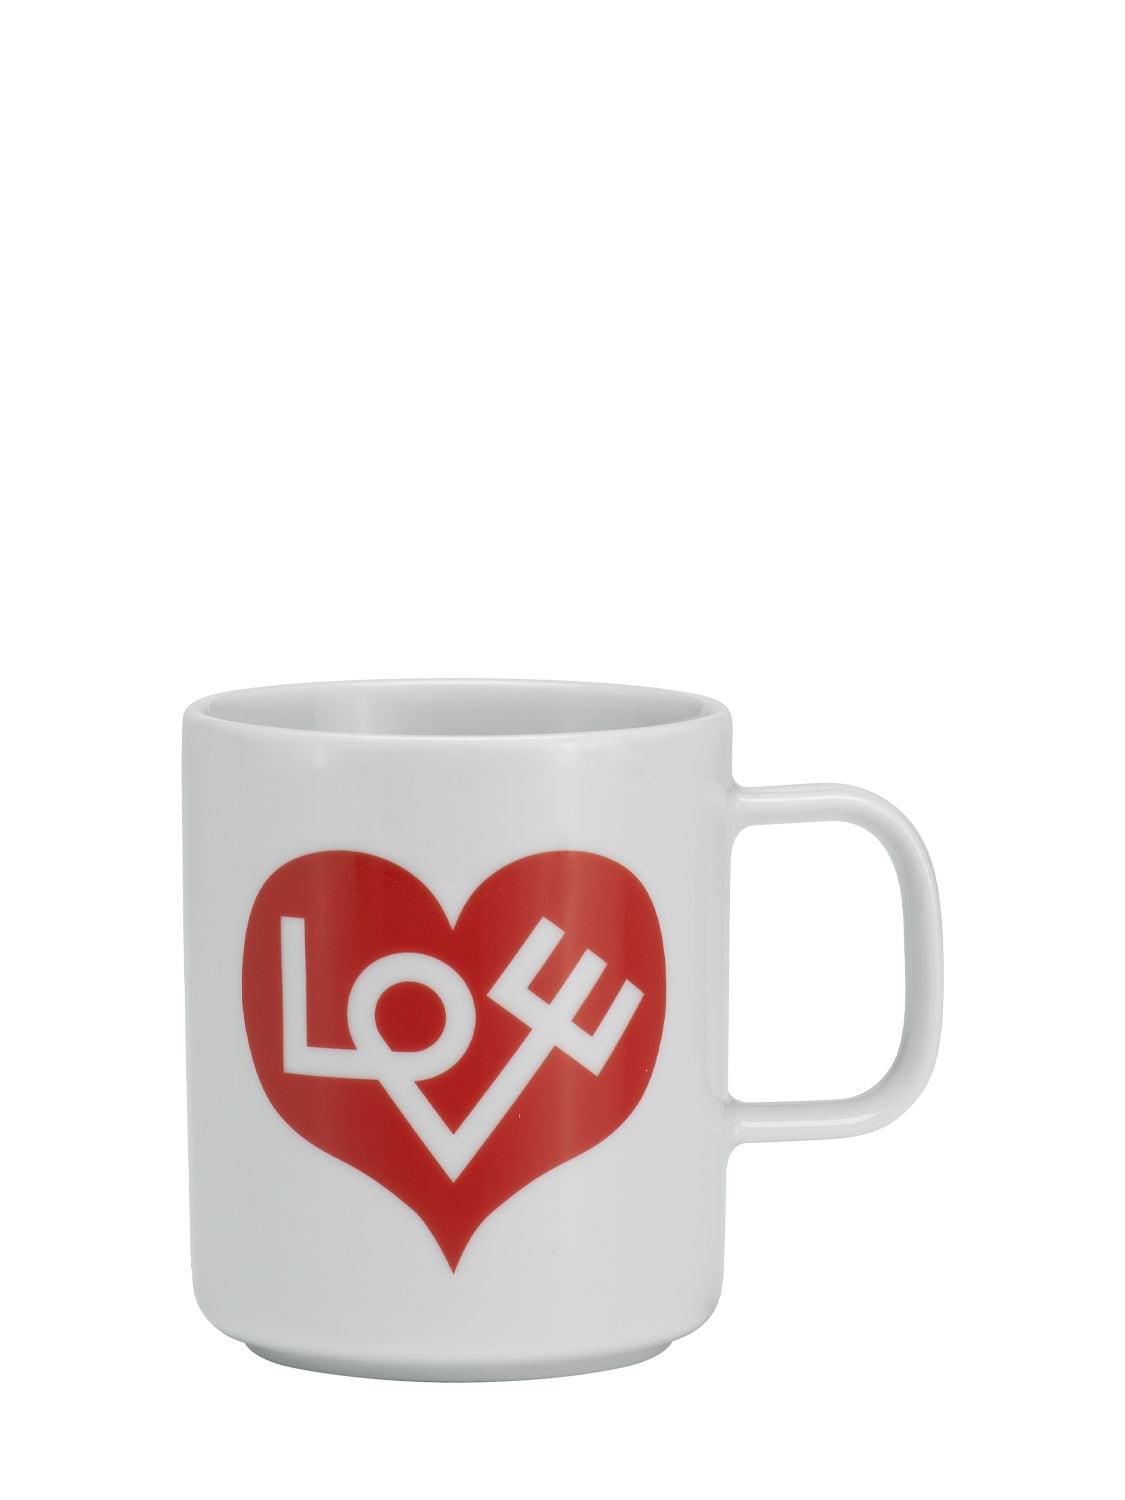 Image of Love Heart Coffee Mug